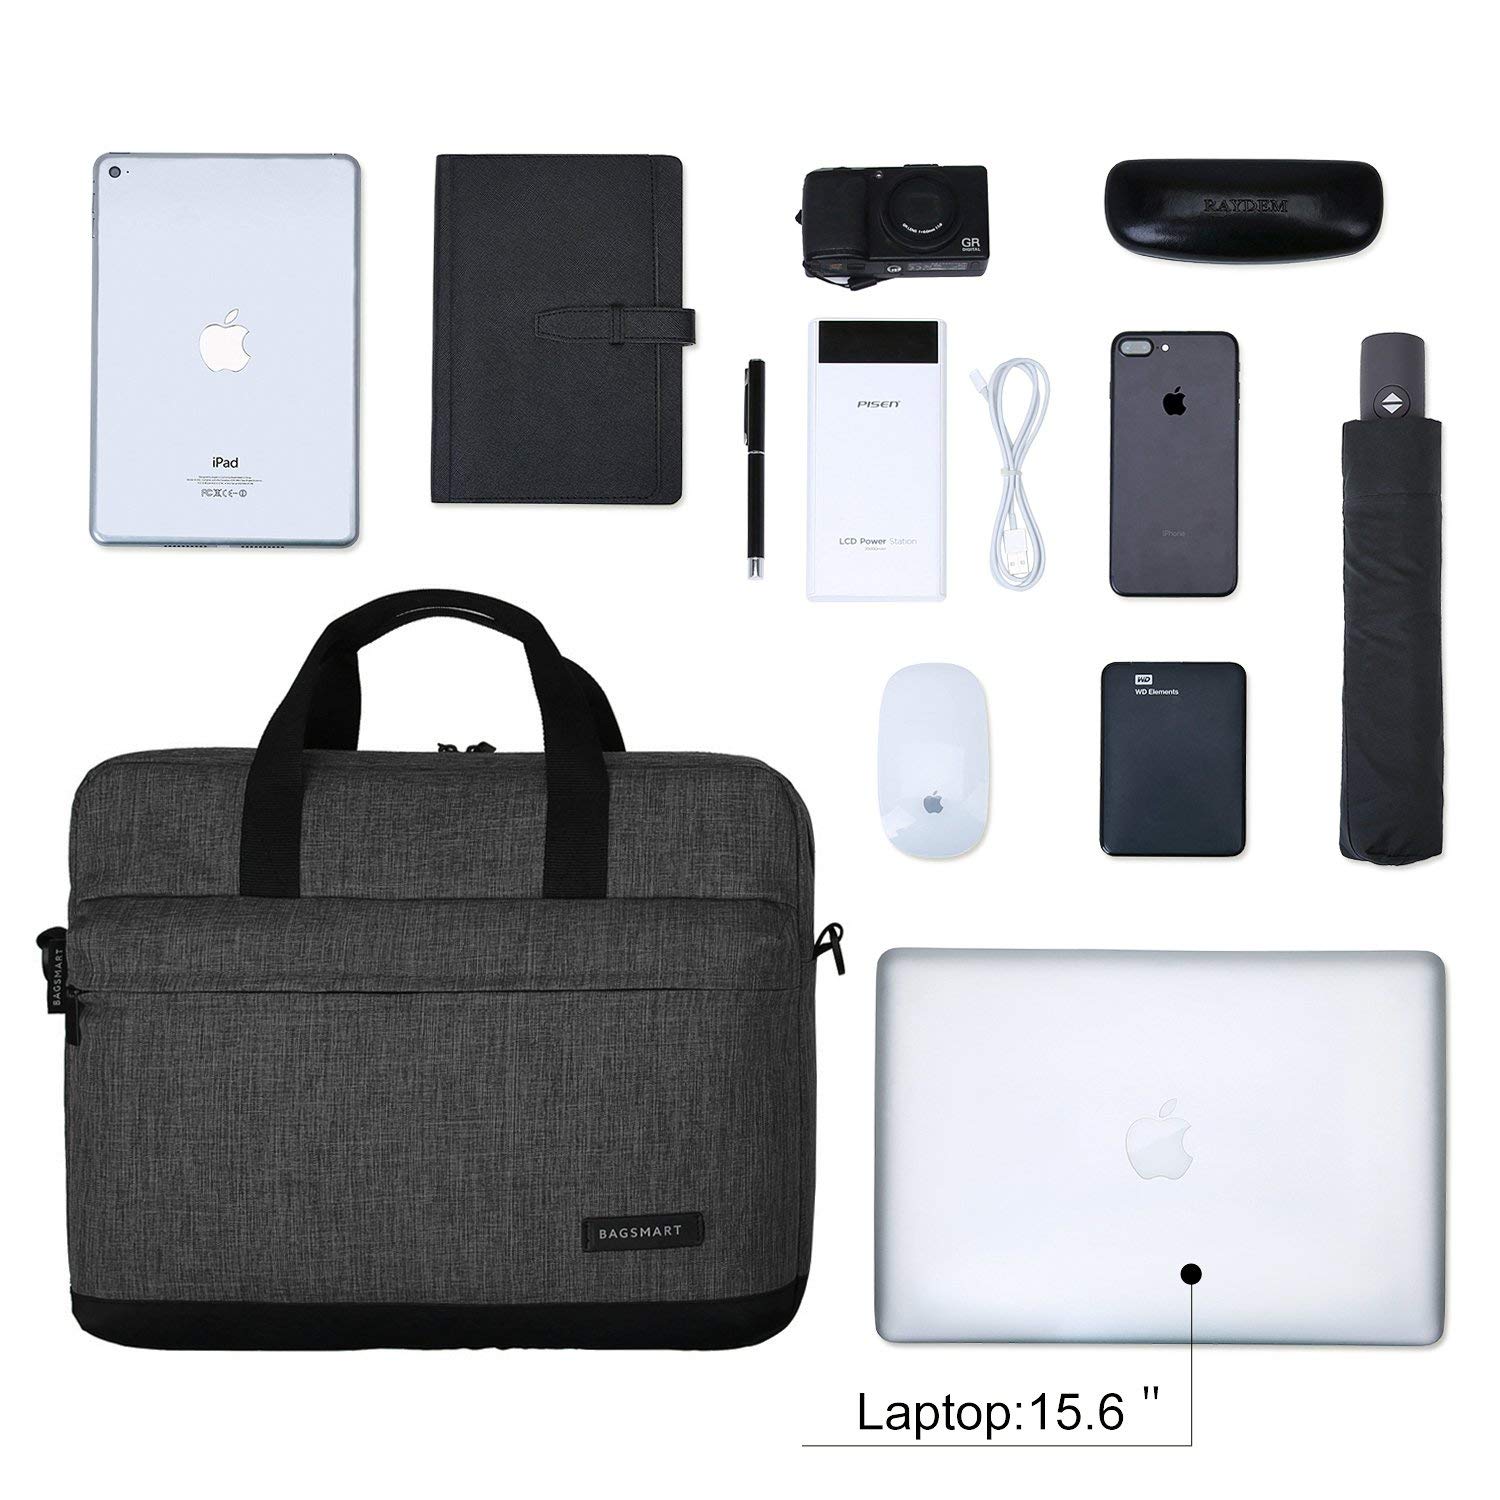 15.6 inch Minimalist Laptop Bag by Bagsmart - yrGear Australia